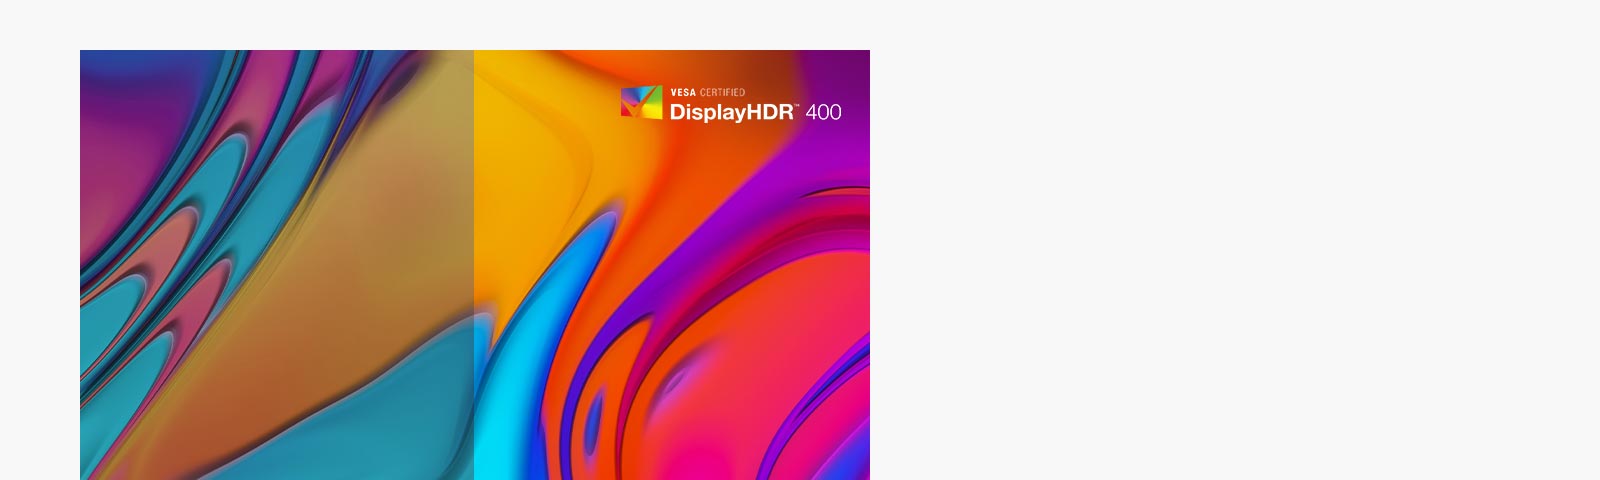 El monitor es compatible con VESA DisplayHDR™ 400 con brillo y contraste de amplio rango, lo que permite una inmersión visual espectacular en los últimos juegos, películas e imágenes HDR.